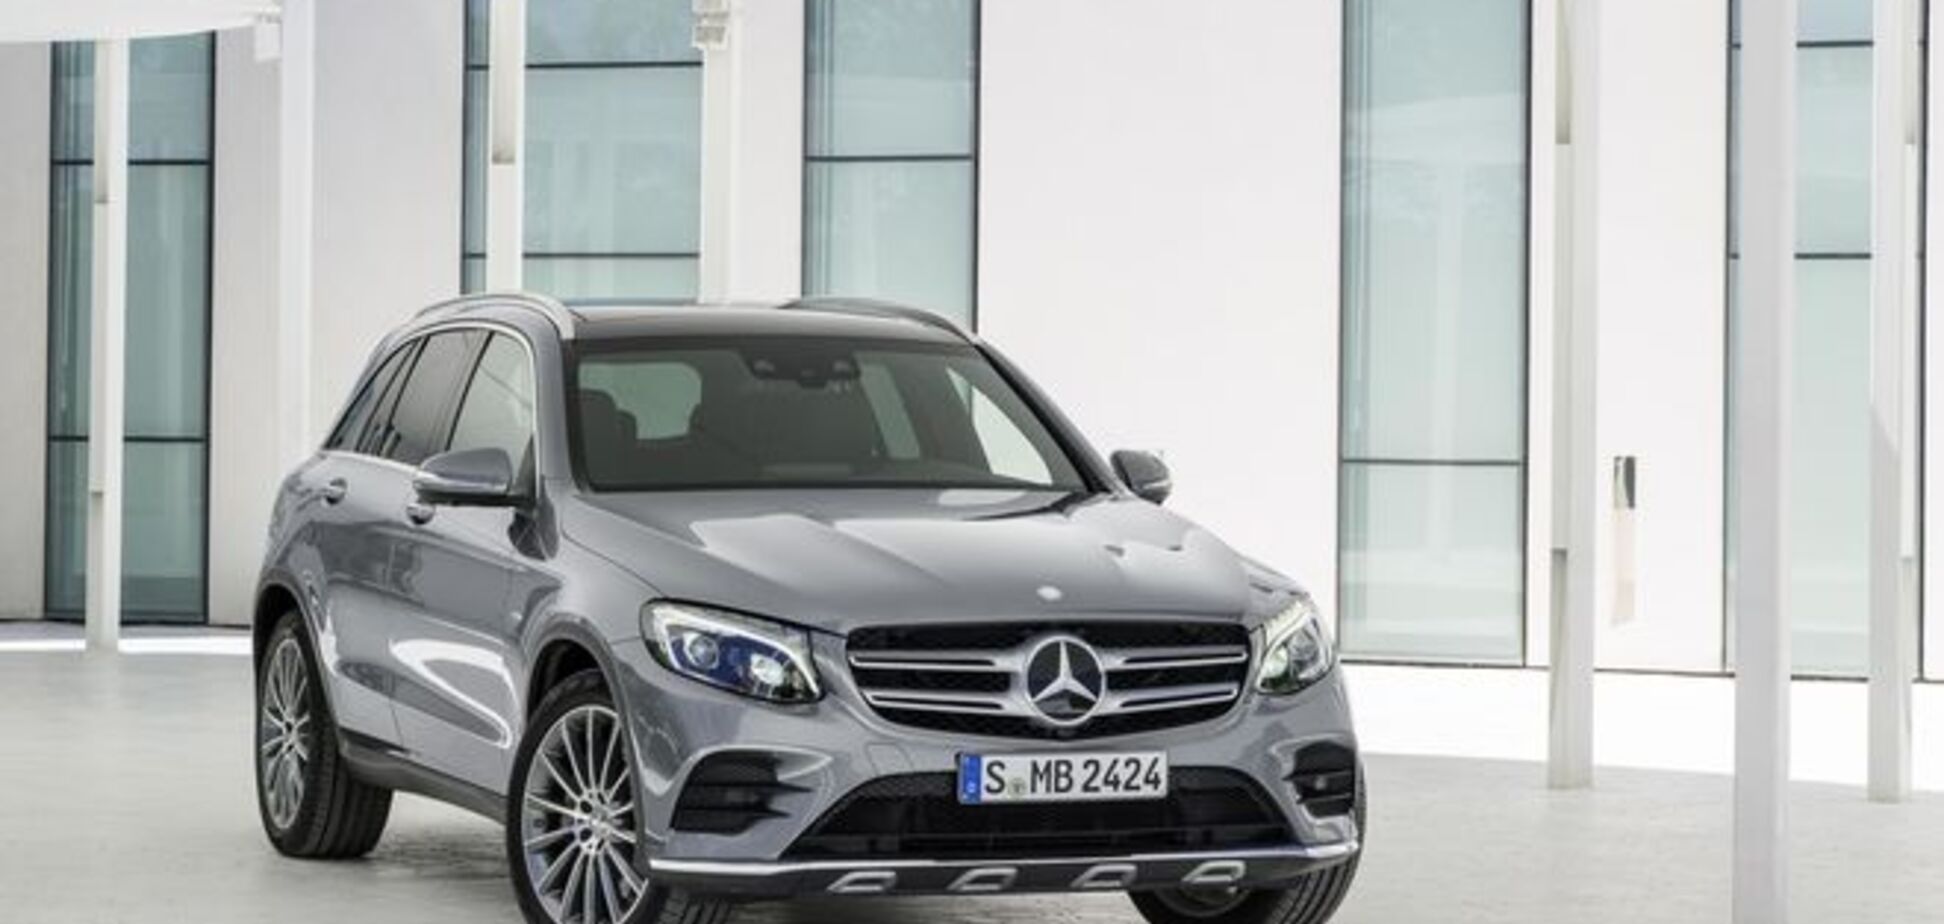 Компактный внедорожник от Mercedes-Benz стал более 'округлым'